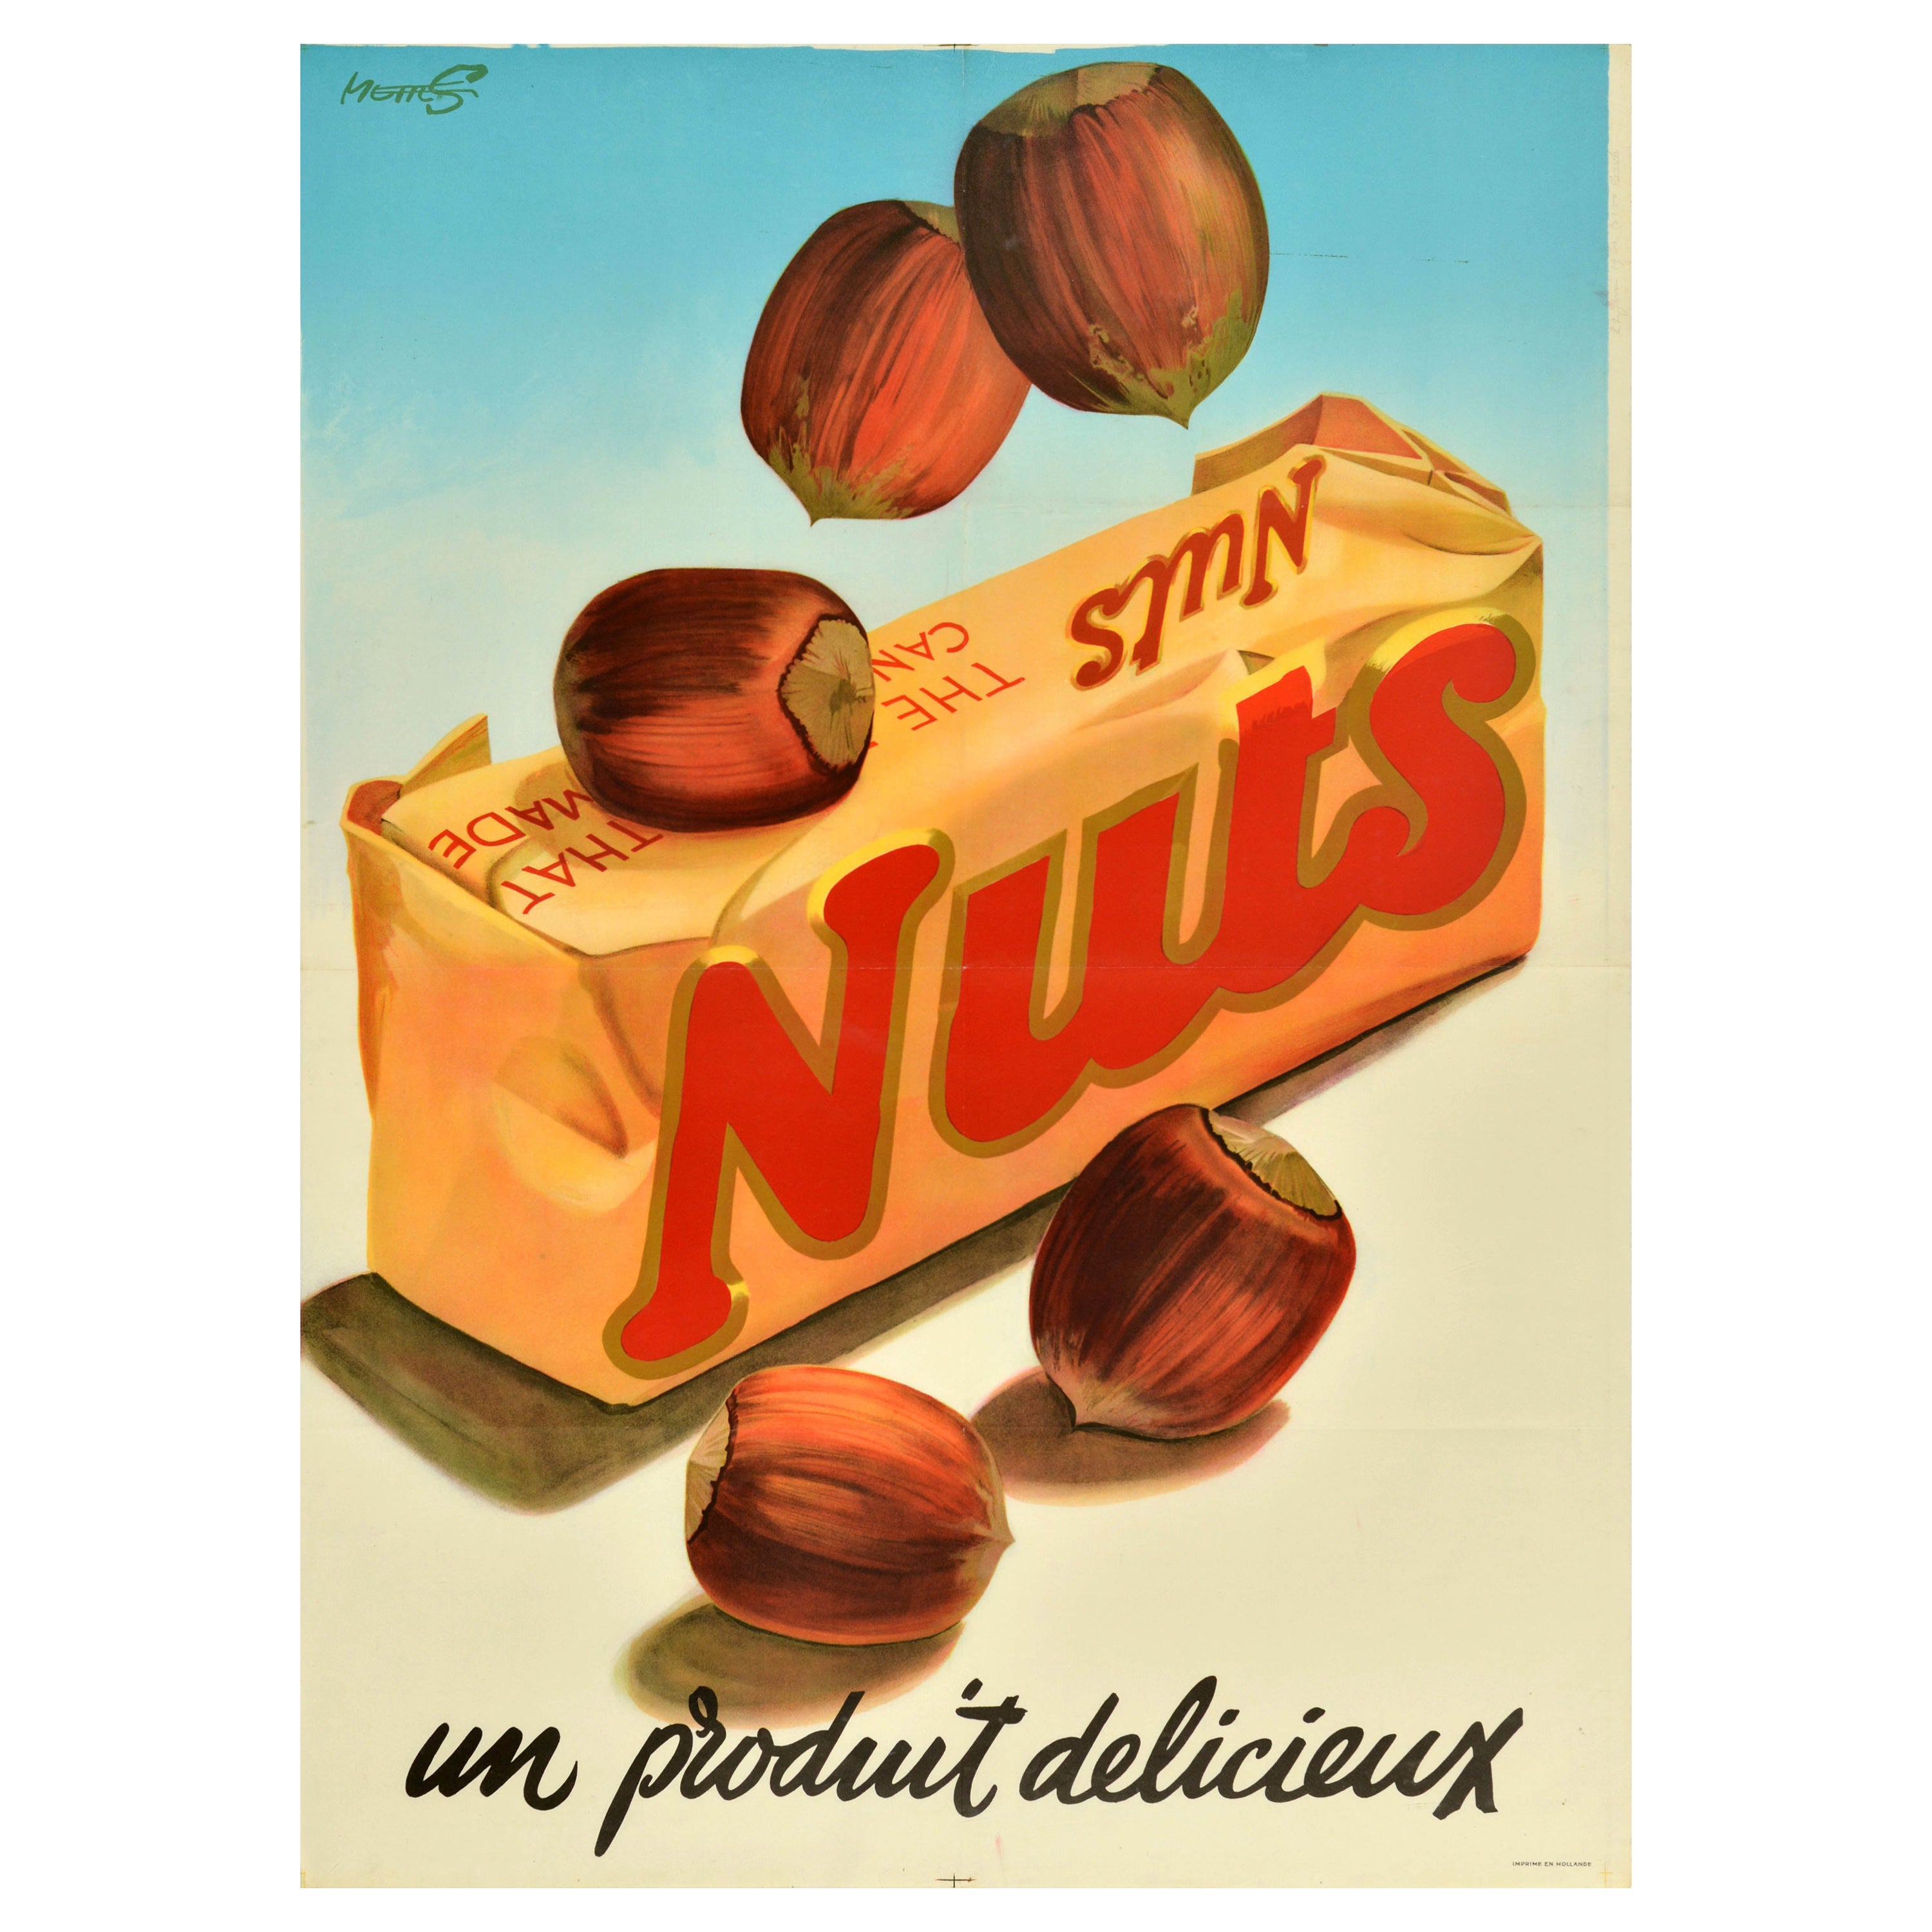 Original-Vintage-Werbeplakat für Lebensmittel, Nussbaum, Schokolade, Bar, Delicious Product